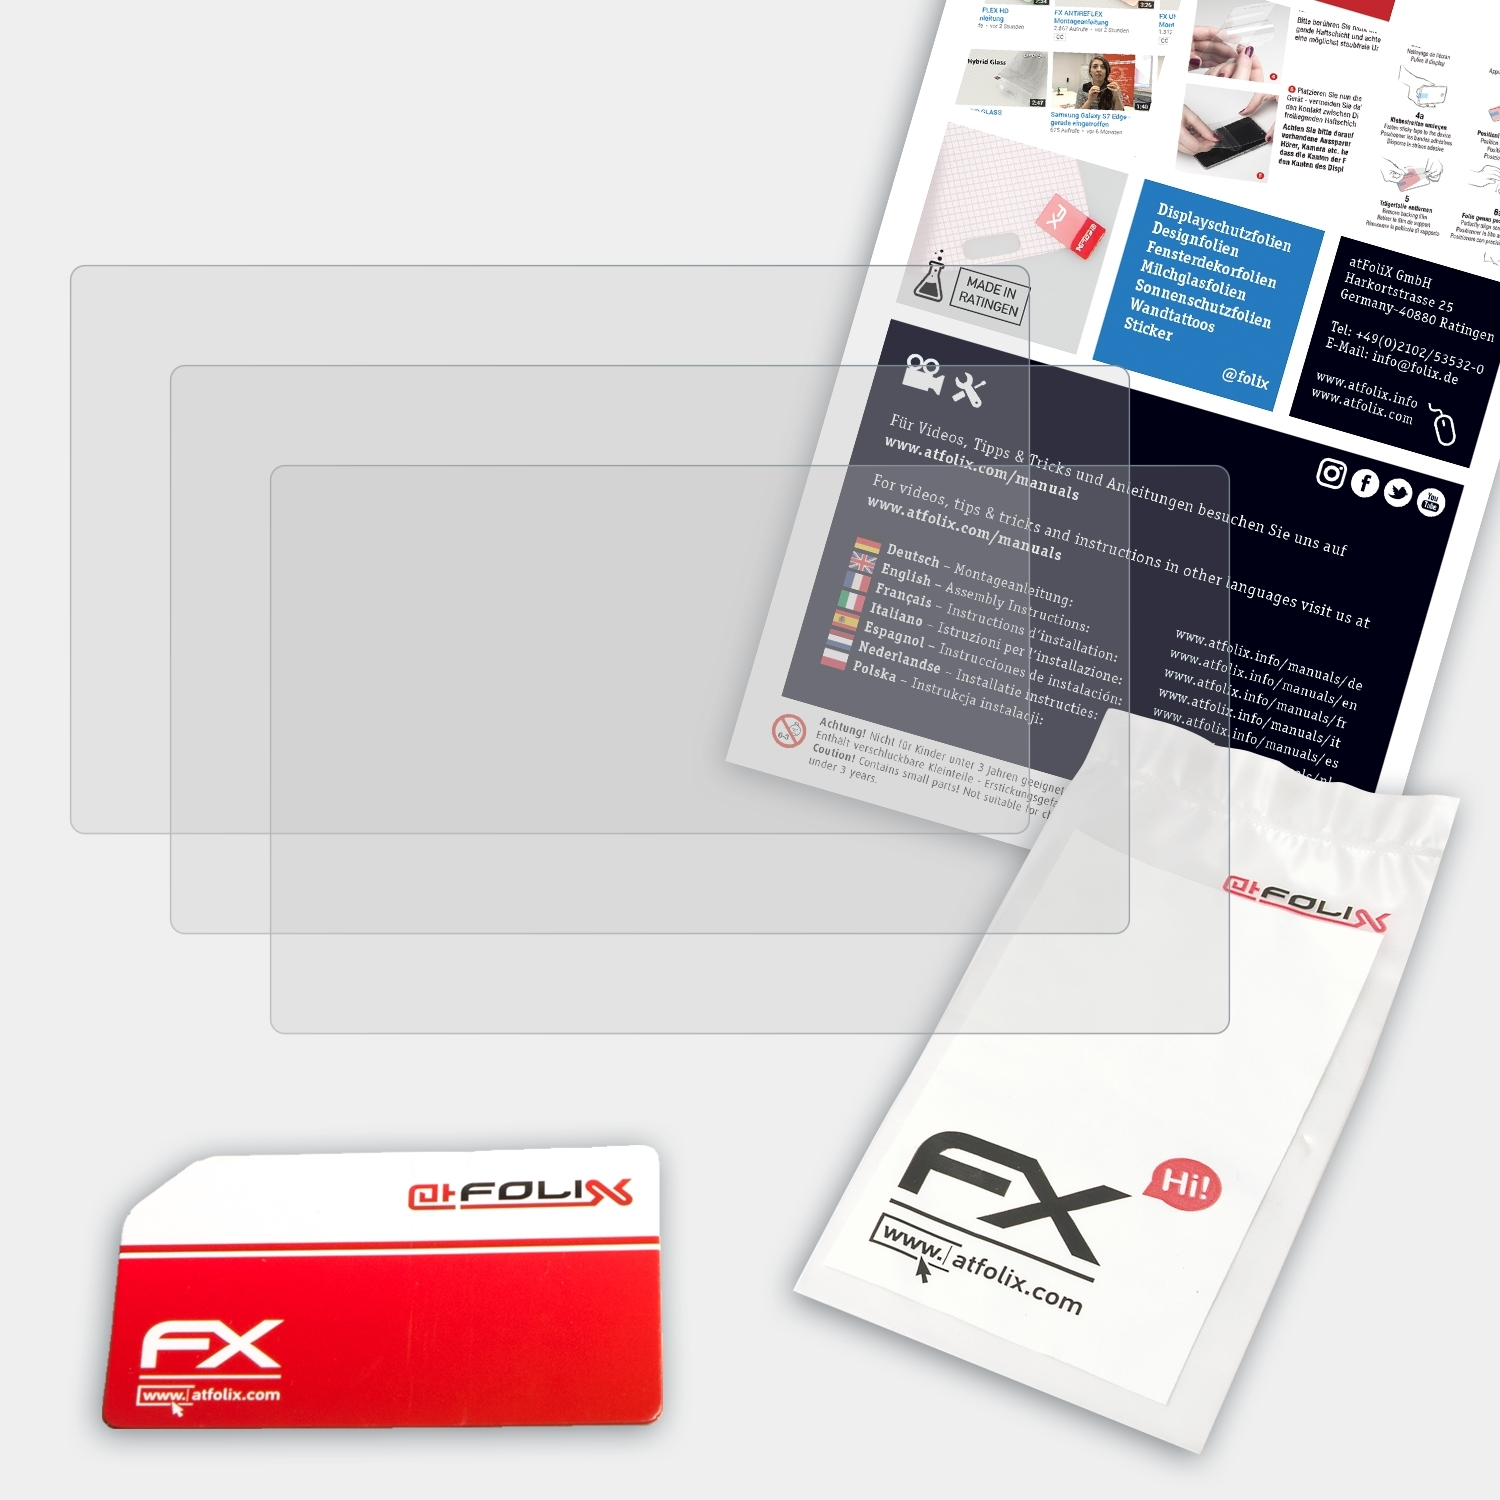 FX-Antireflex ATFOLIX Displayschutz(für NEX-3N) 3x Sony